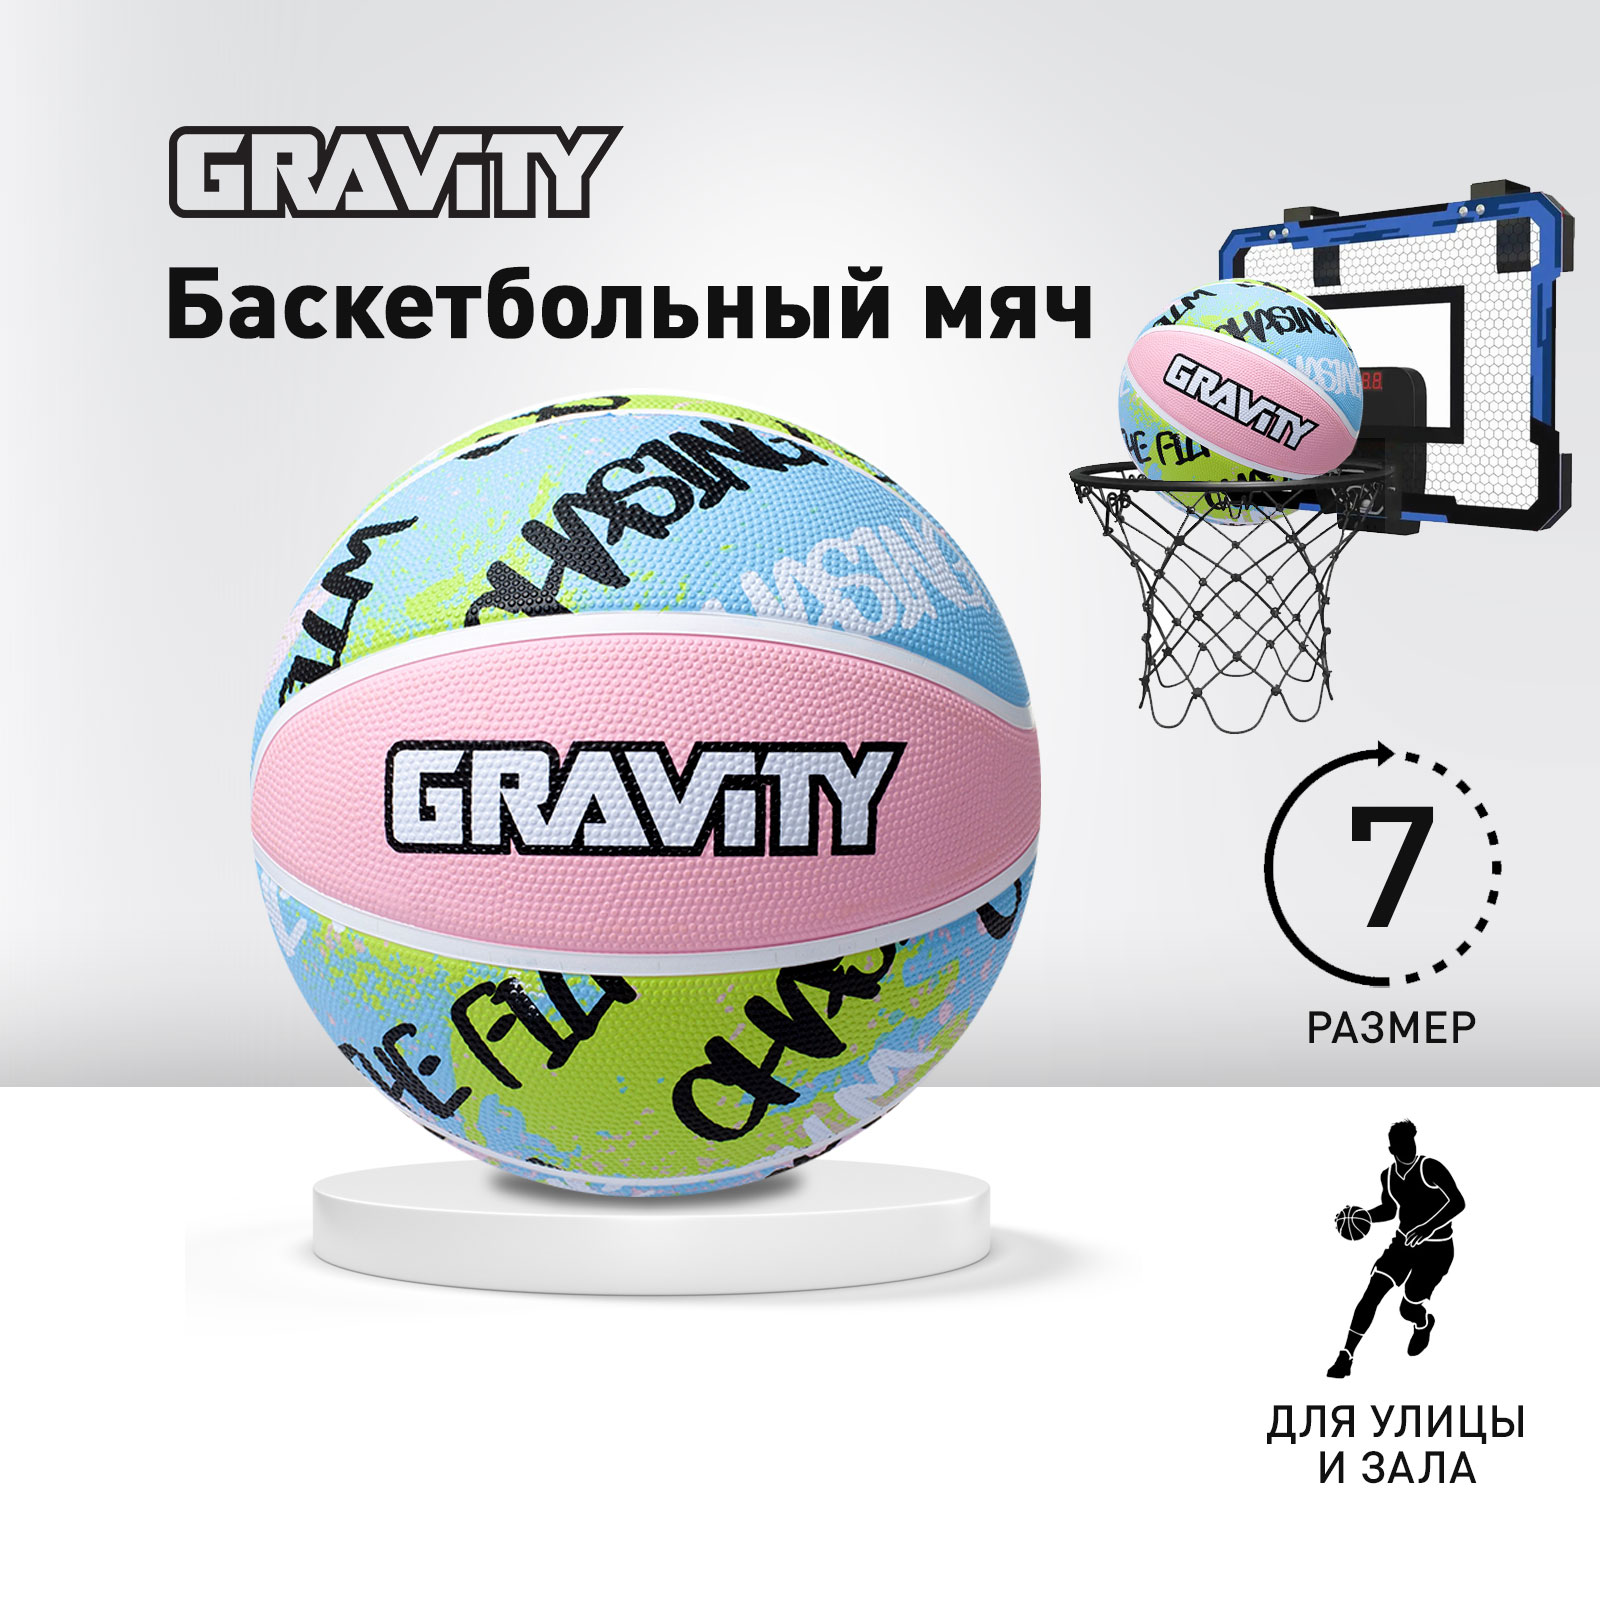 Баскетбольный мяч Gravity, резиновый, желто-голубой, размер 7